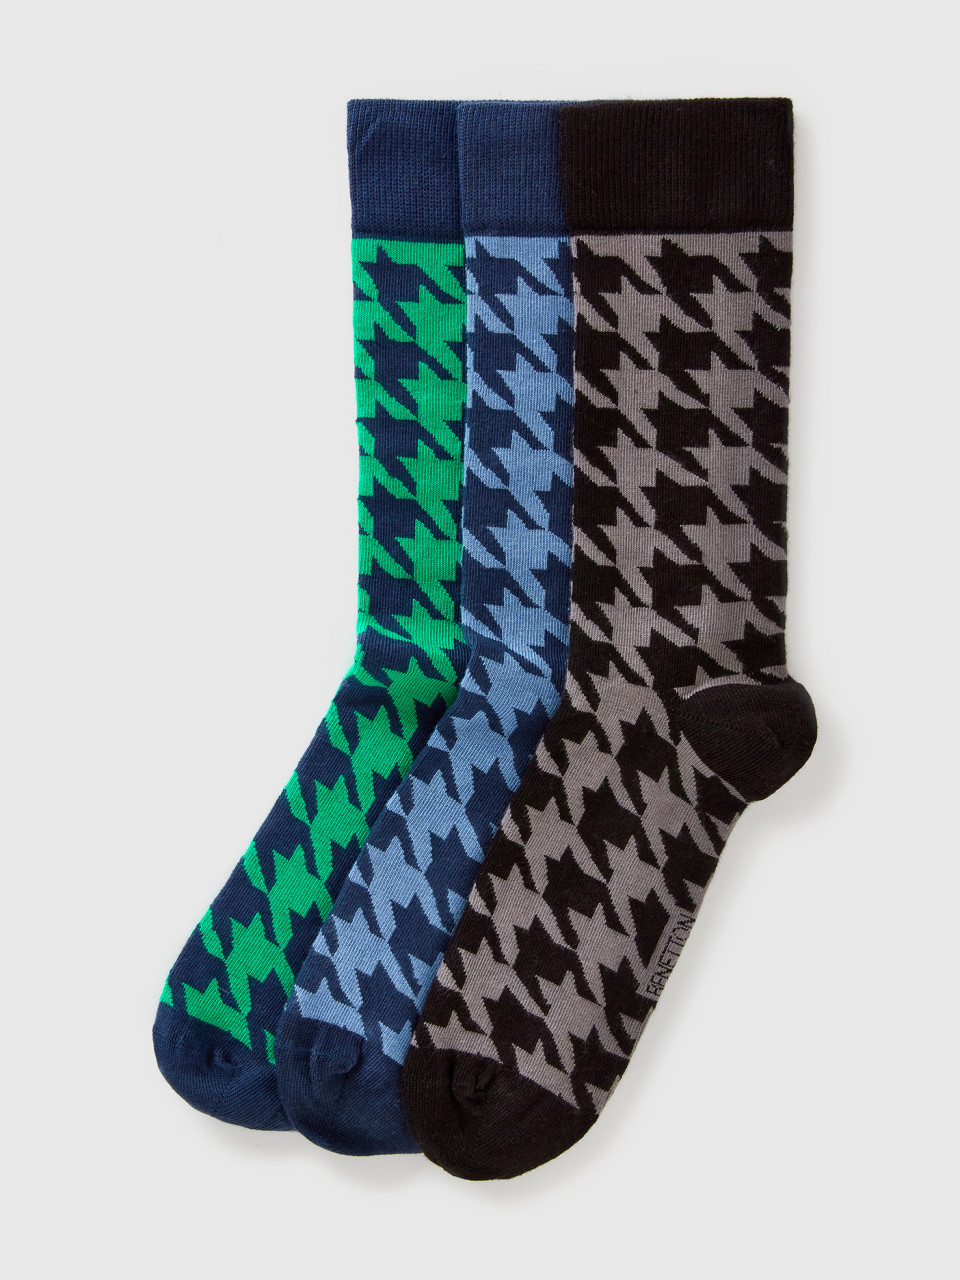 Benetton, Long Houndstooth Socks, Multi-color, Men